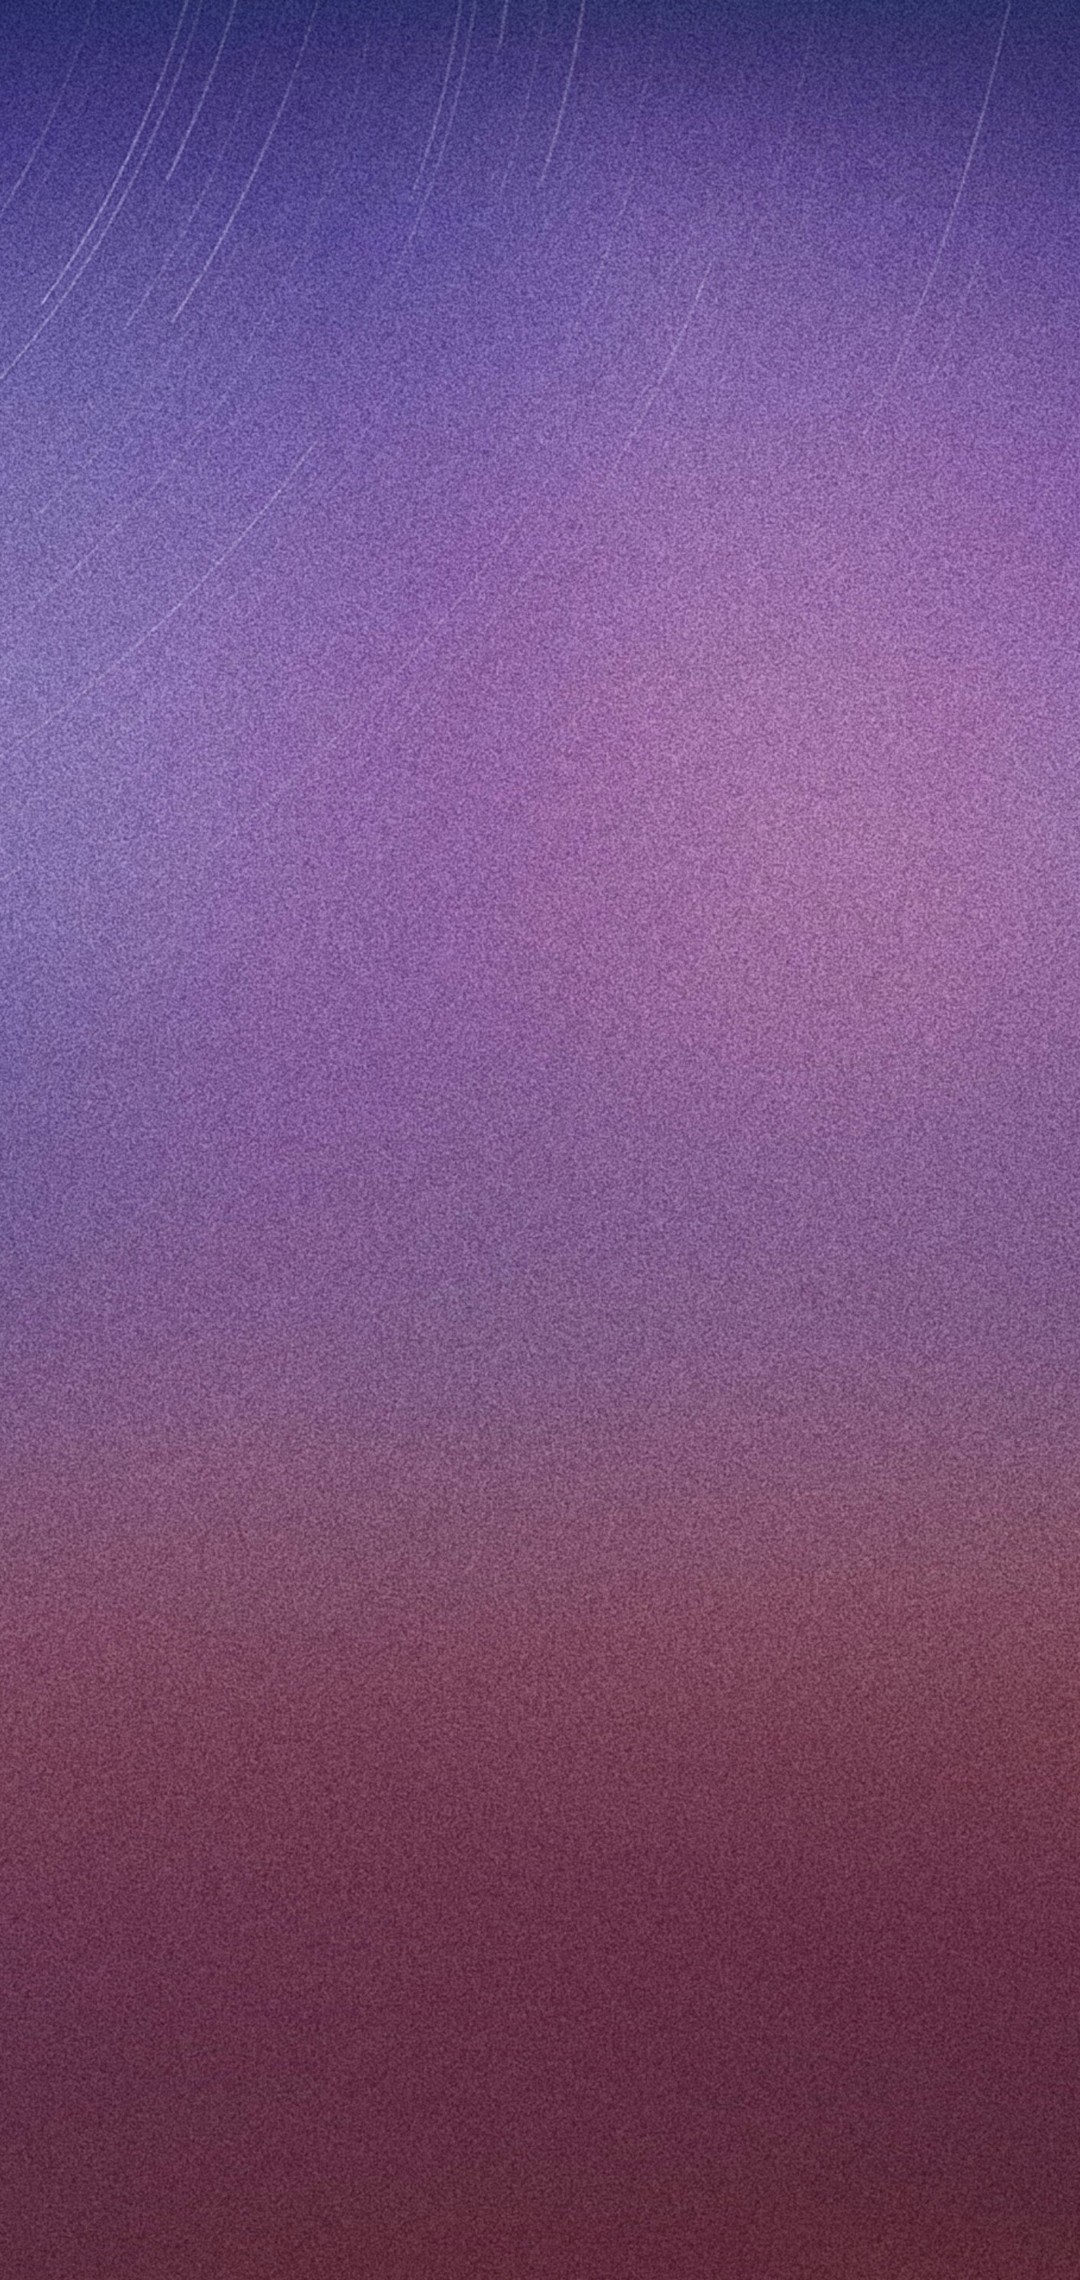 ザラついたピンク 紫 星 Zenfone Max Pro M2 Androidスマホ壁紙 待ち受け スマラン